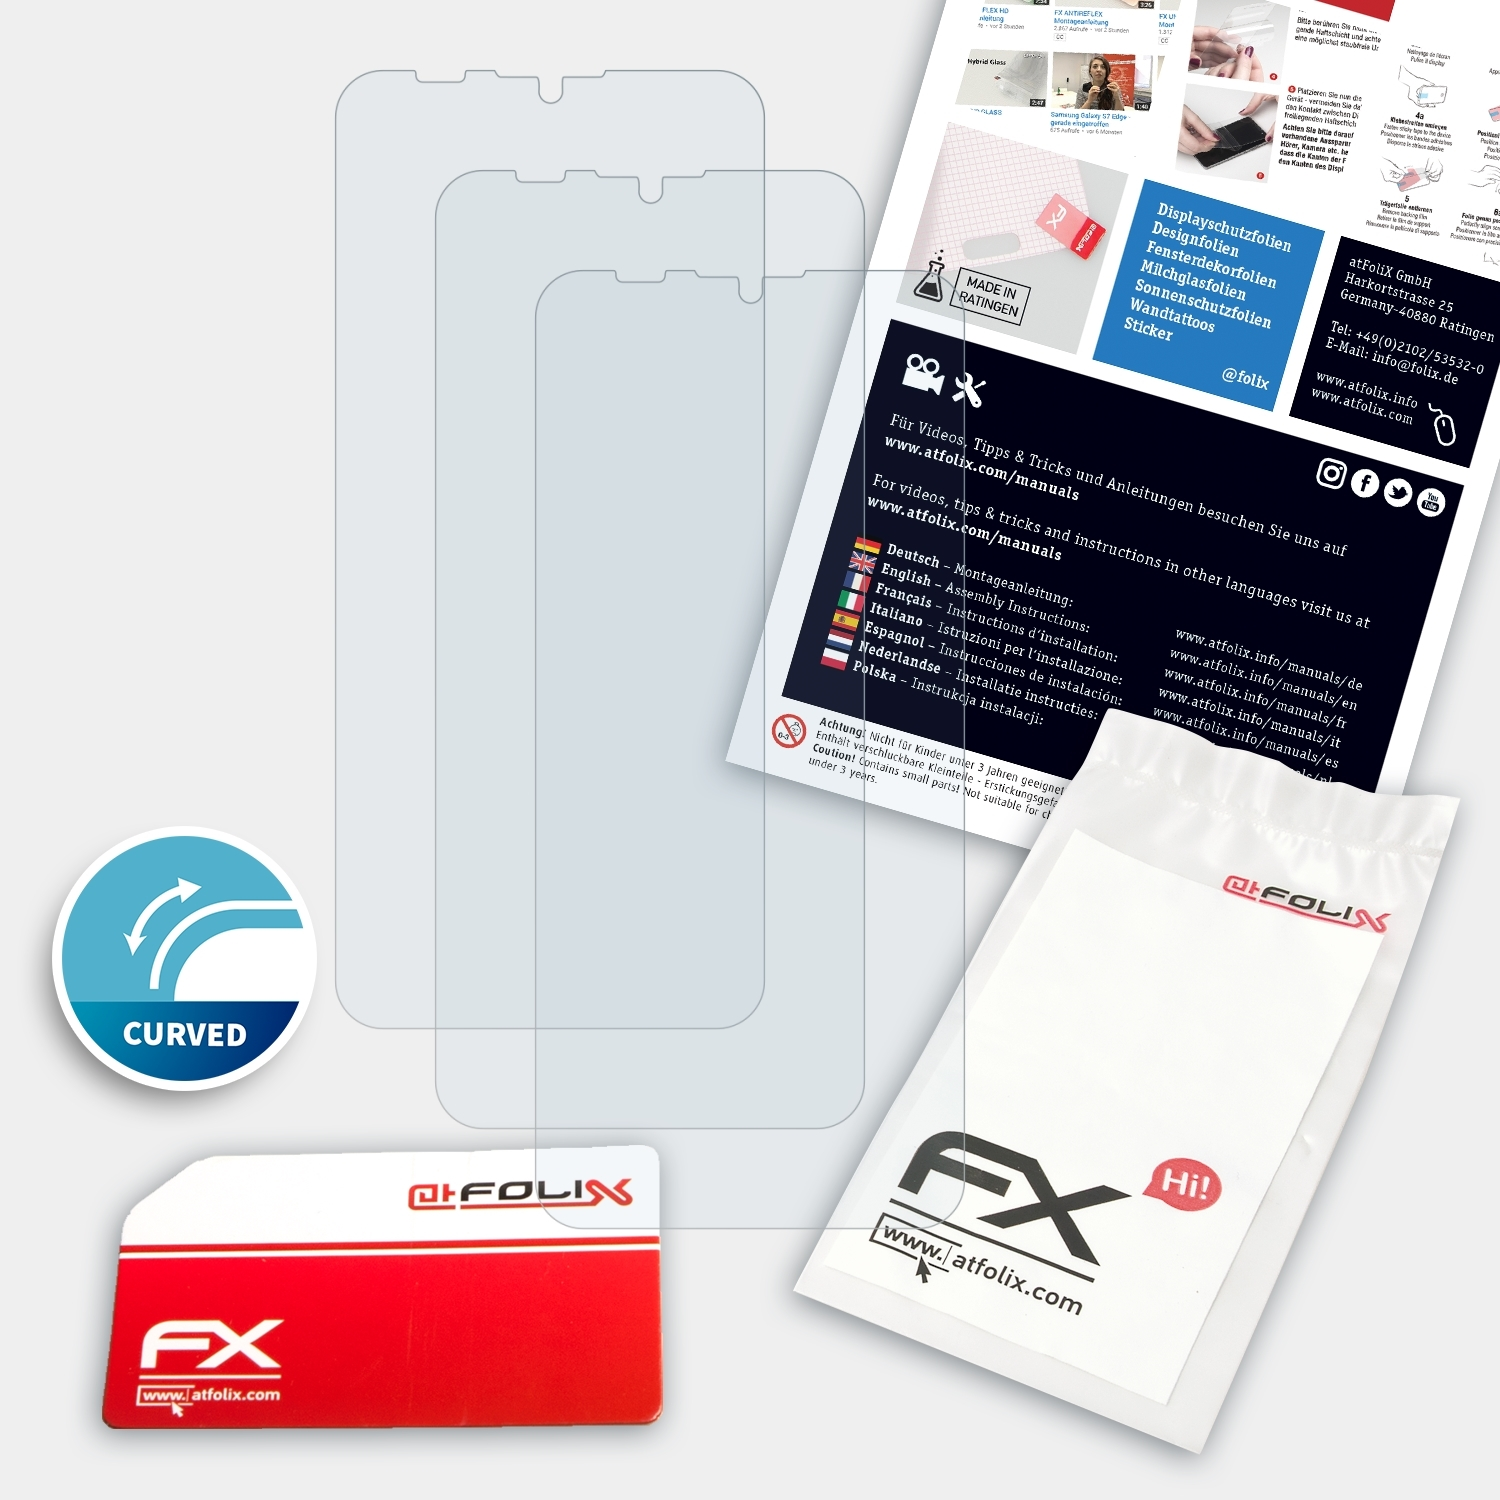 FX-ActiFleX Ulefone 9P) Note ATFOLIX Displayschutz(für 3x